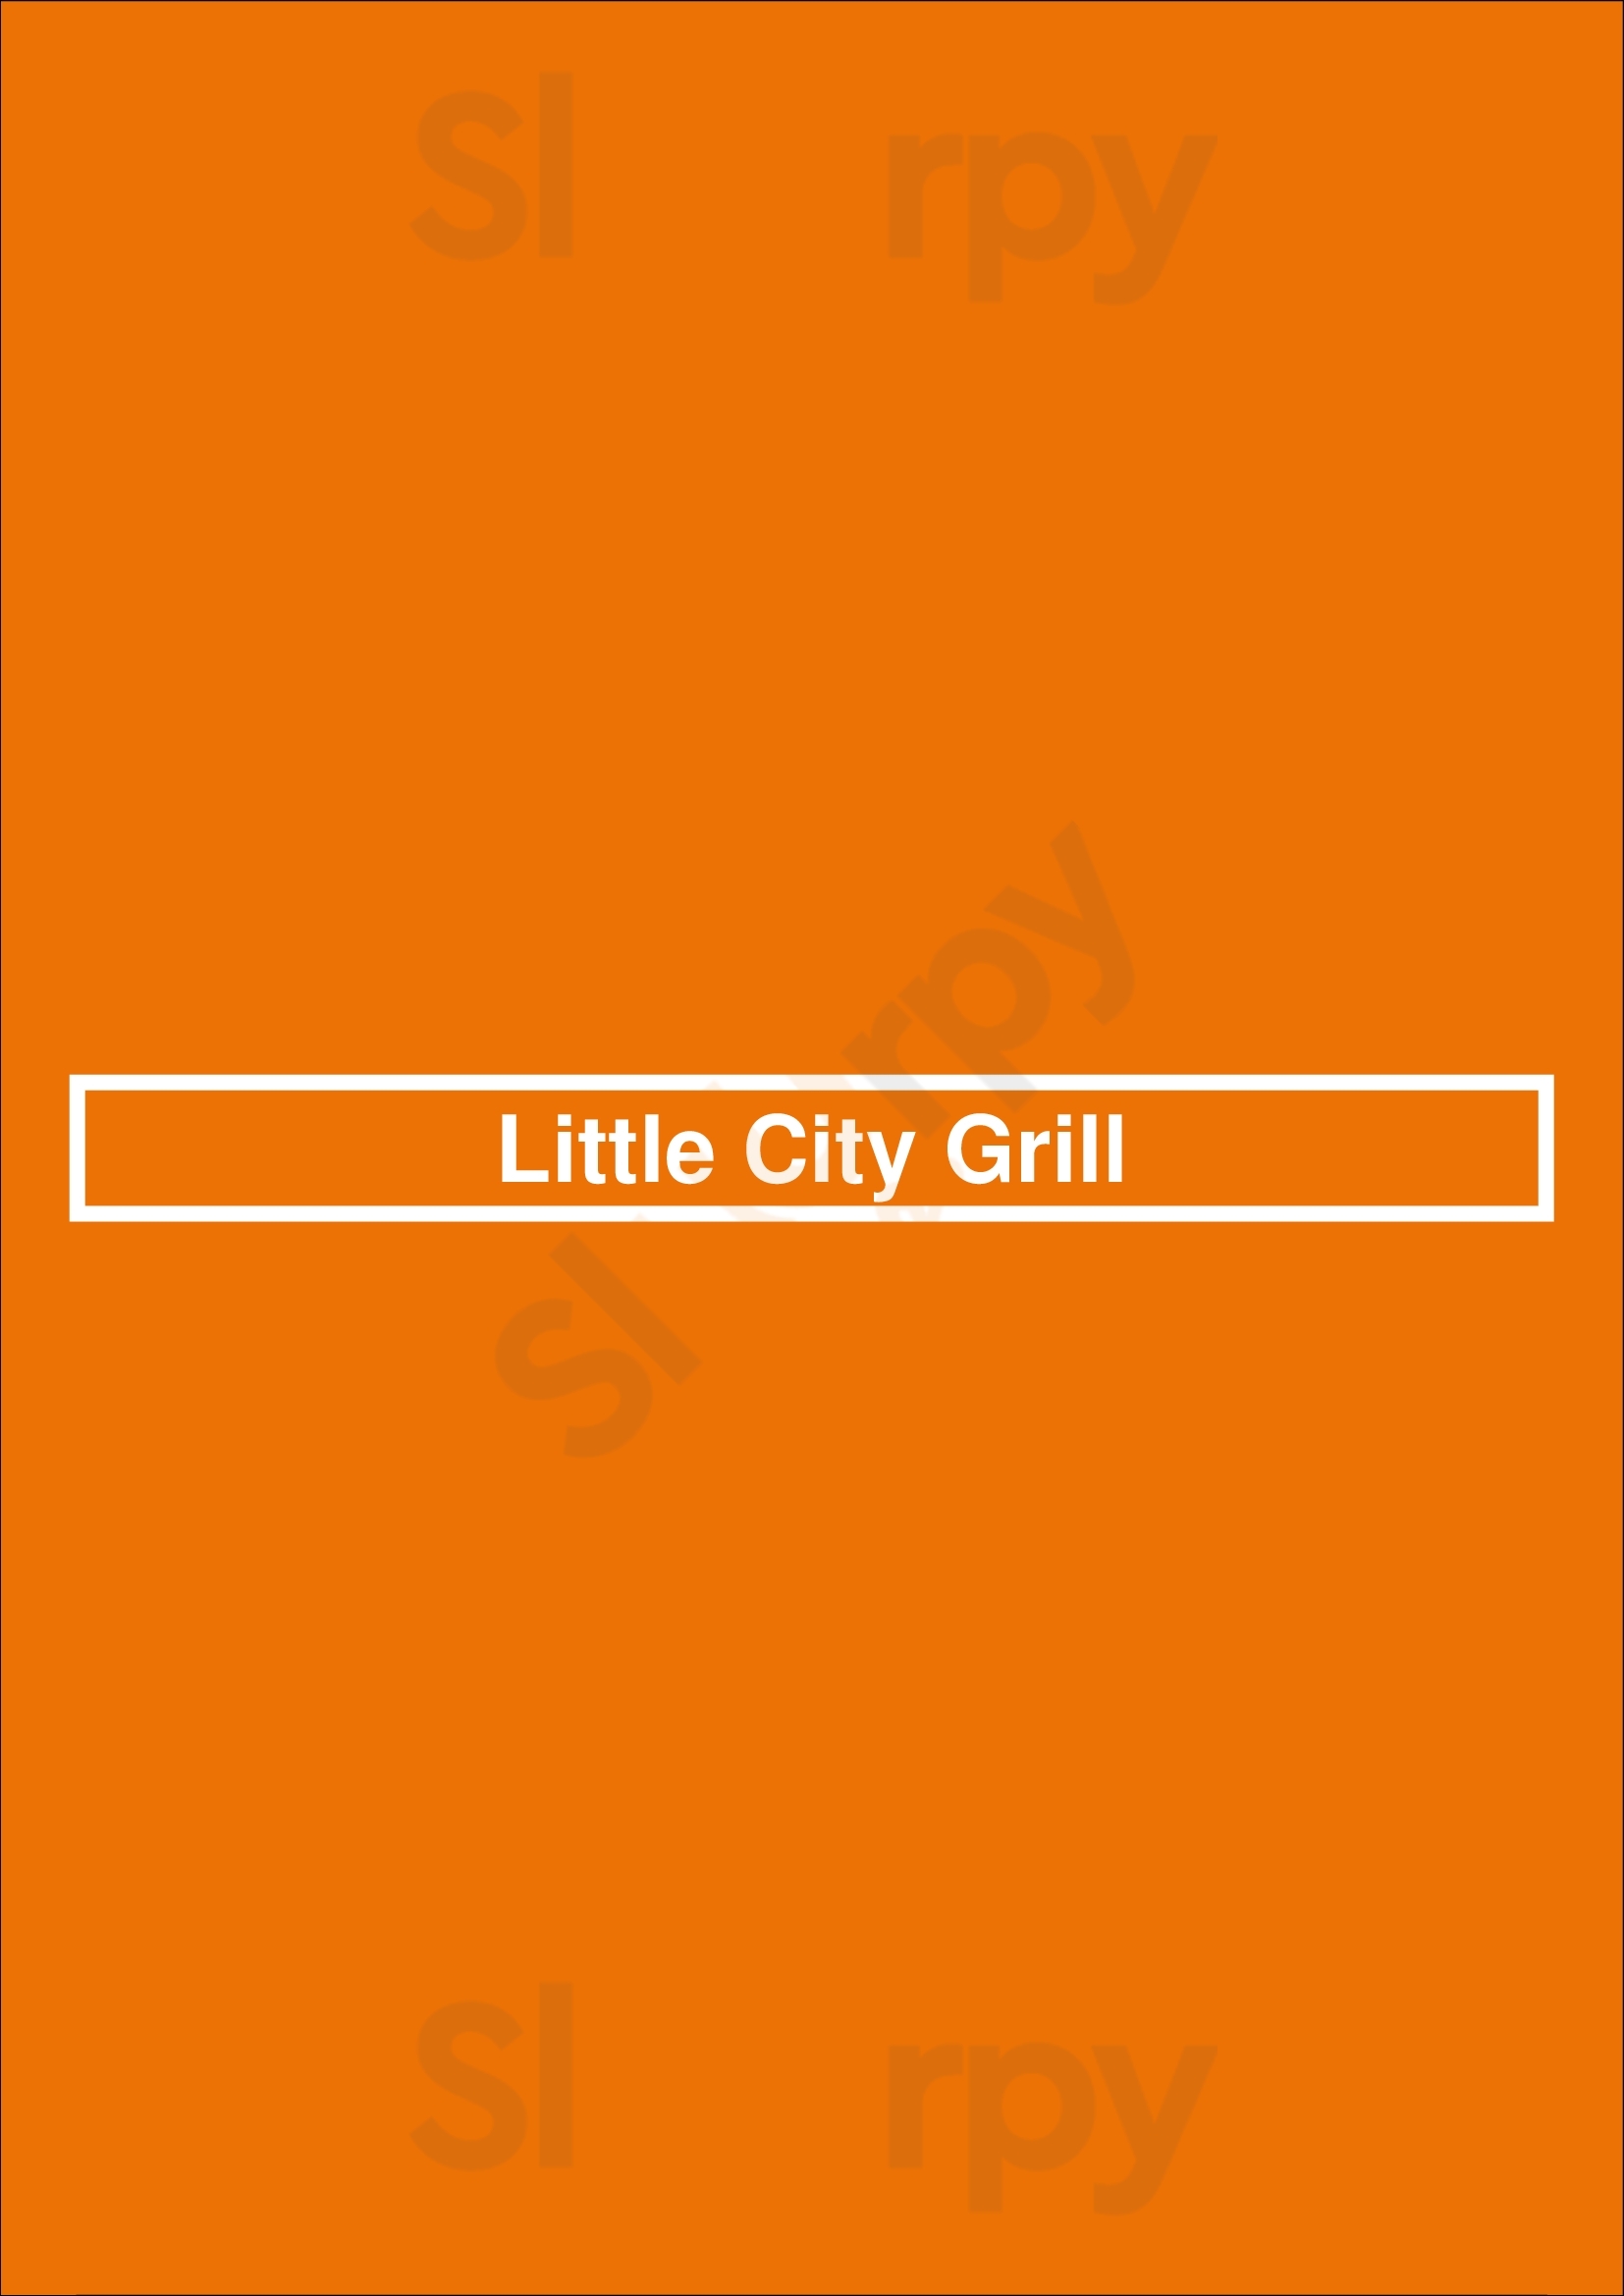 Little City Grill Kent Menu - 1